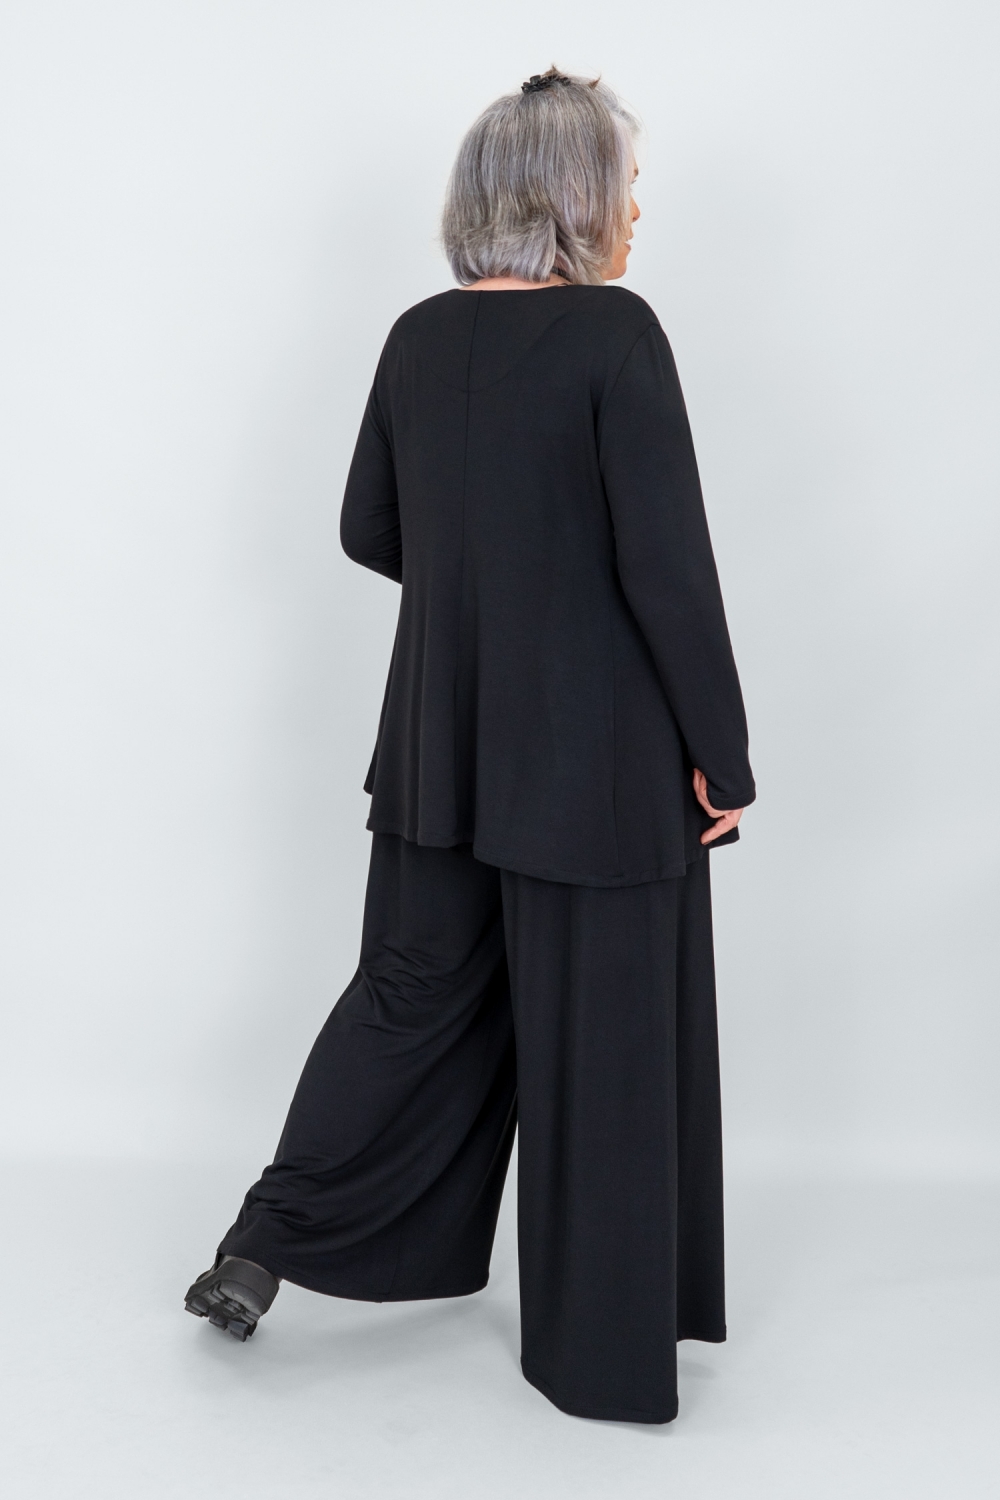 Cusanus Hose im Marlene Stil aus Bambusfaser in schwarz